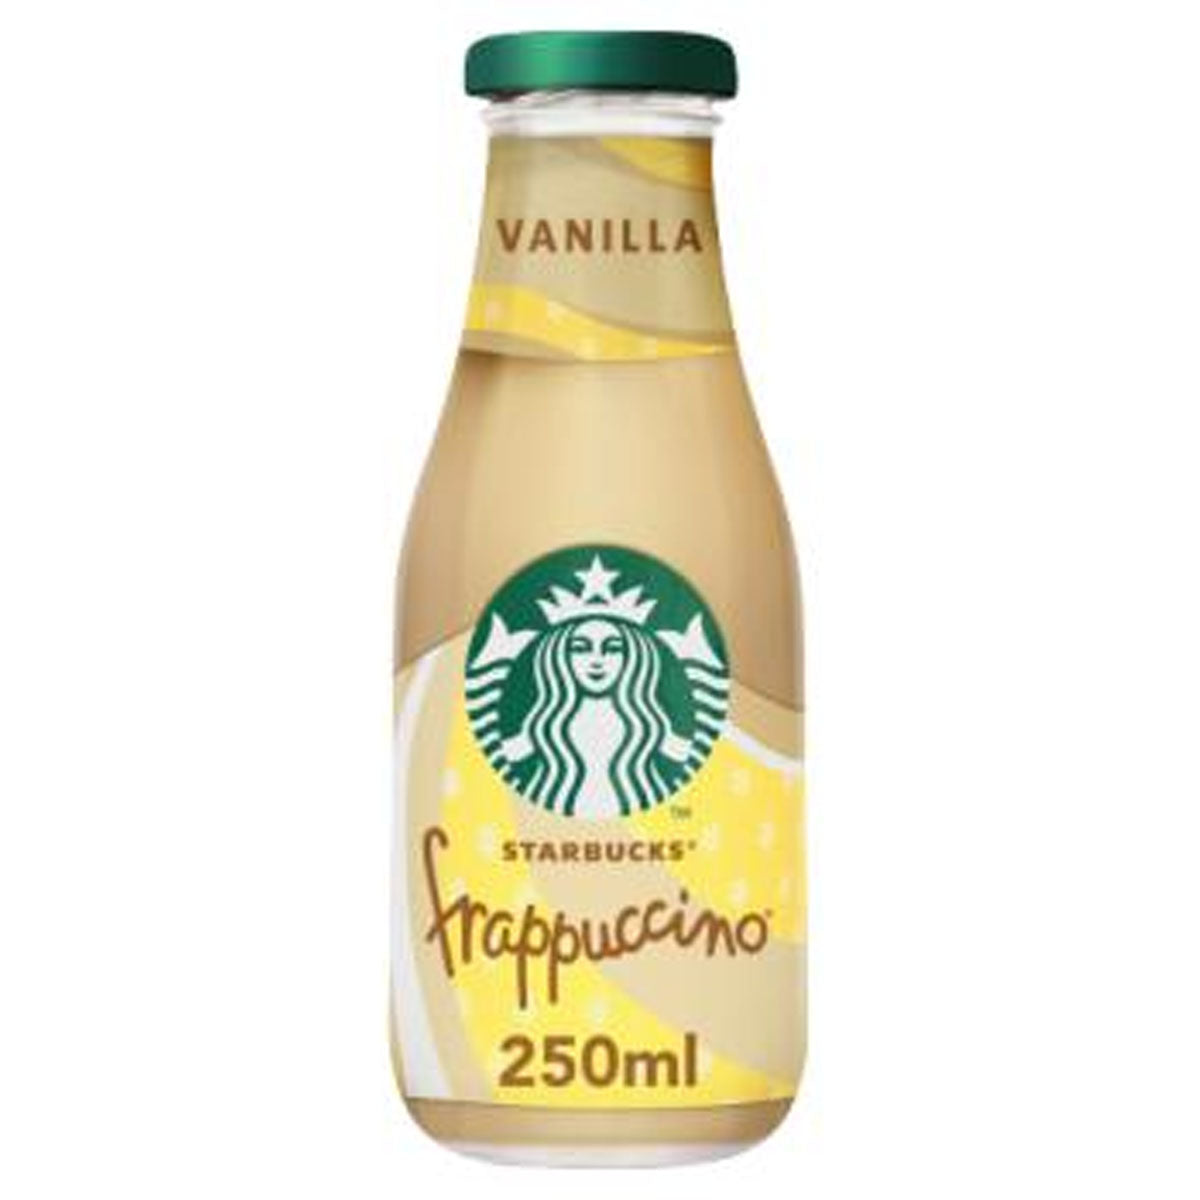 Starbucks - Frappuccino Vanilla Flavour - 250ml - Continental Food Store